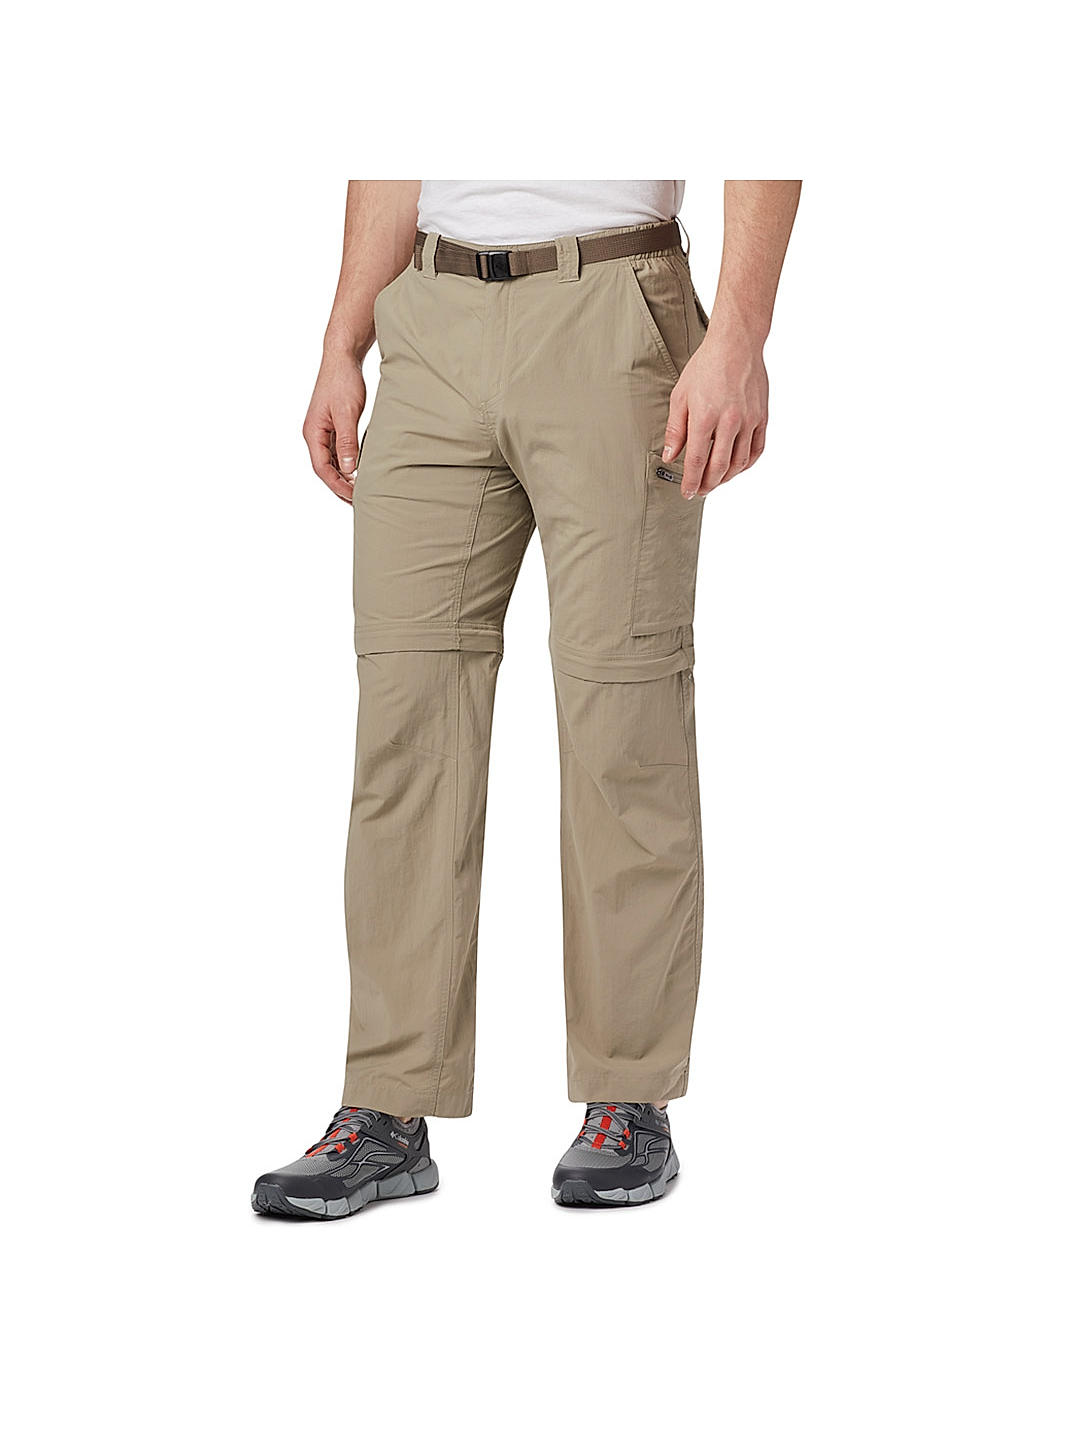 BC Clothing Men's Convertible Pants NAVY | Mens outfits, Cargo pants men,  Hiking pants mens